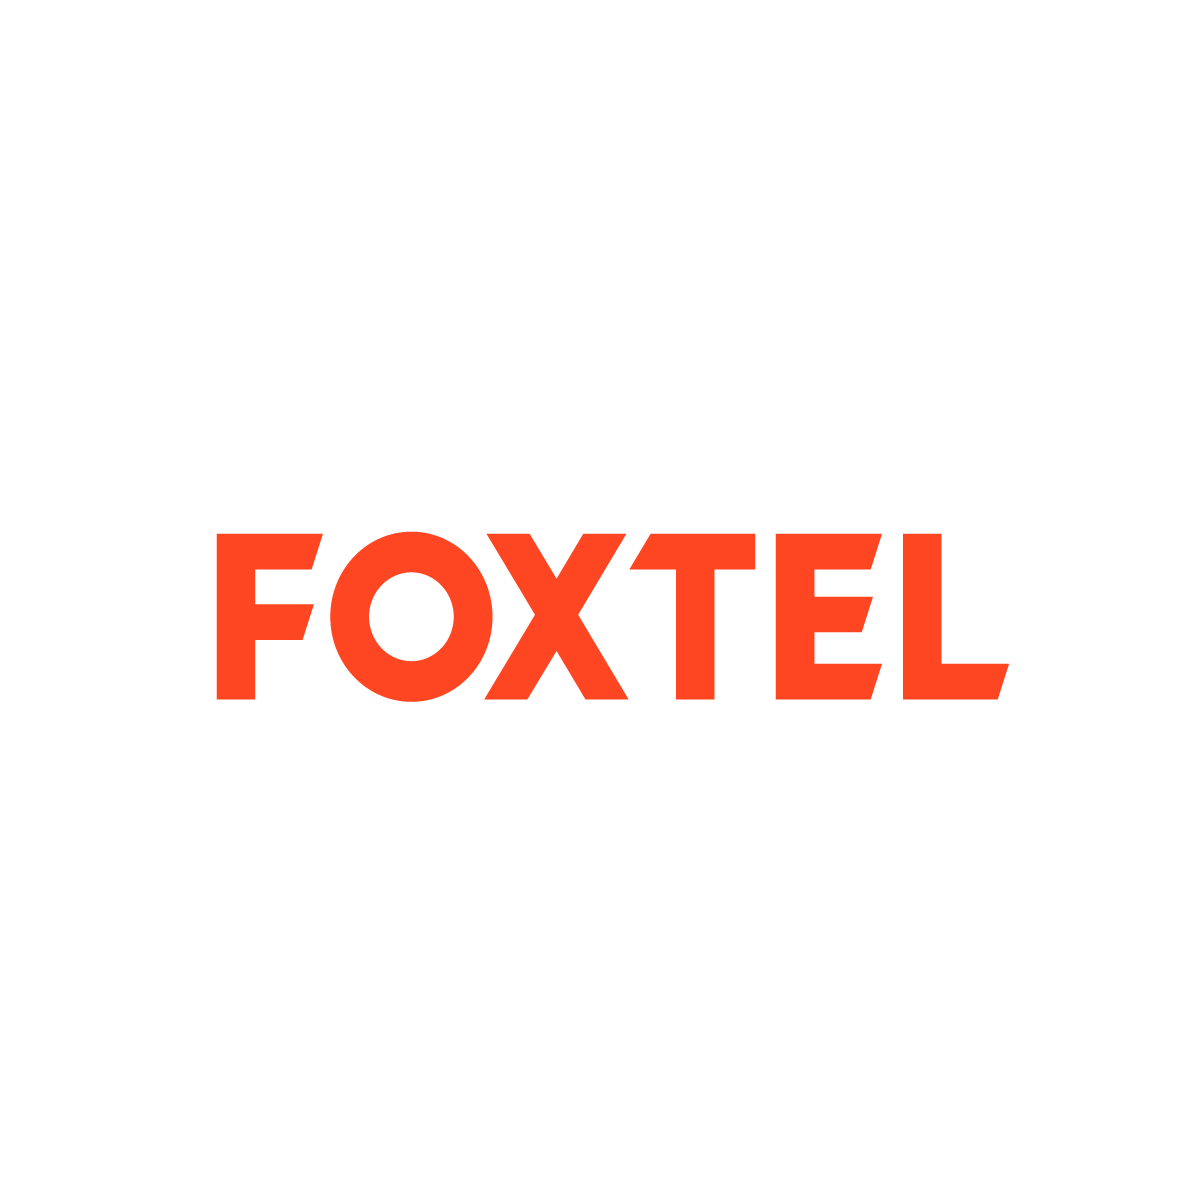 foxtel.png